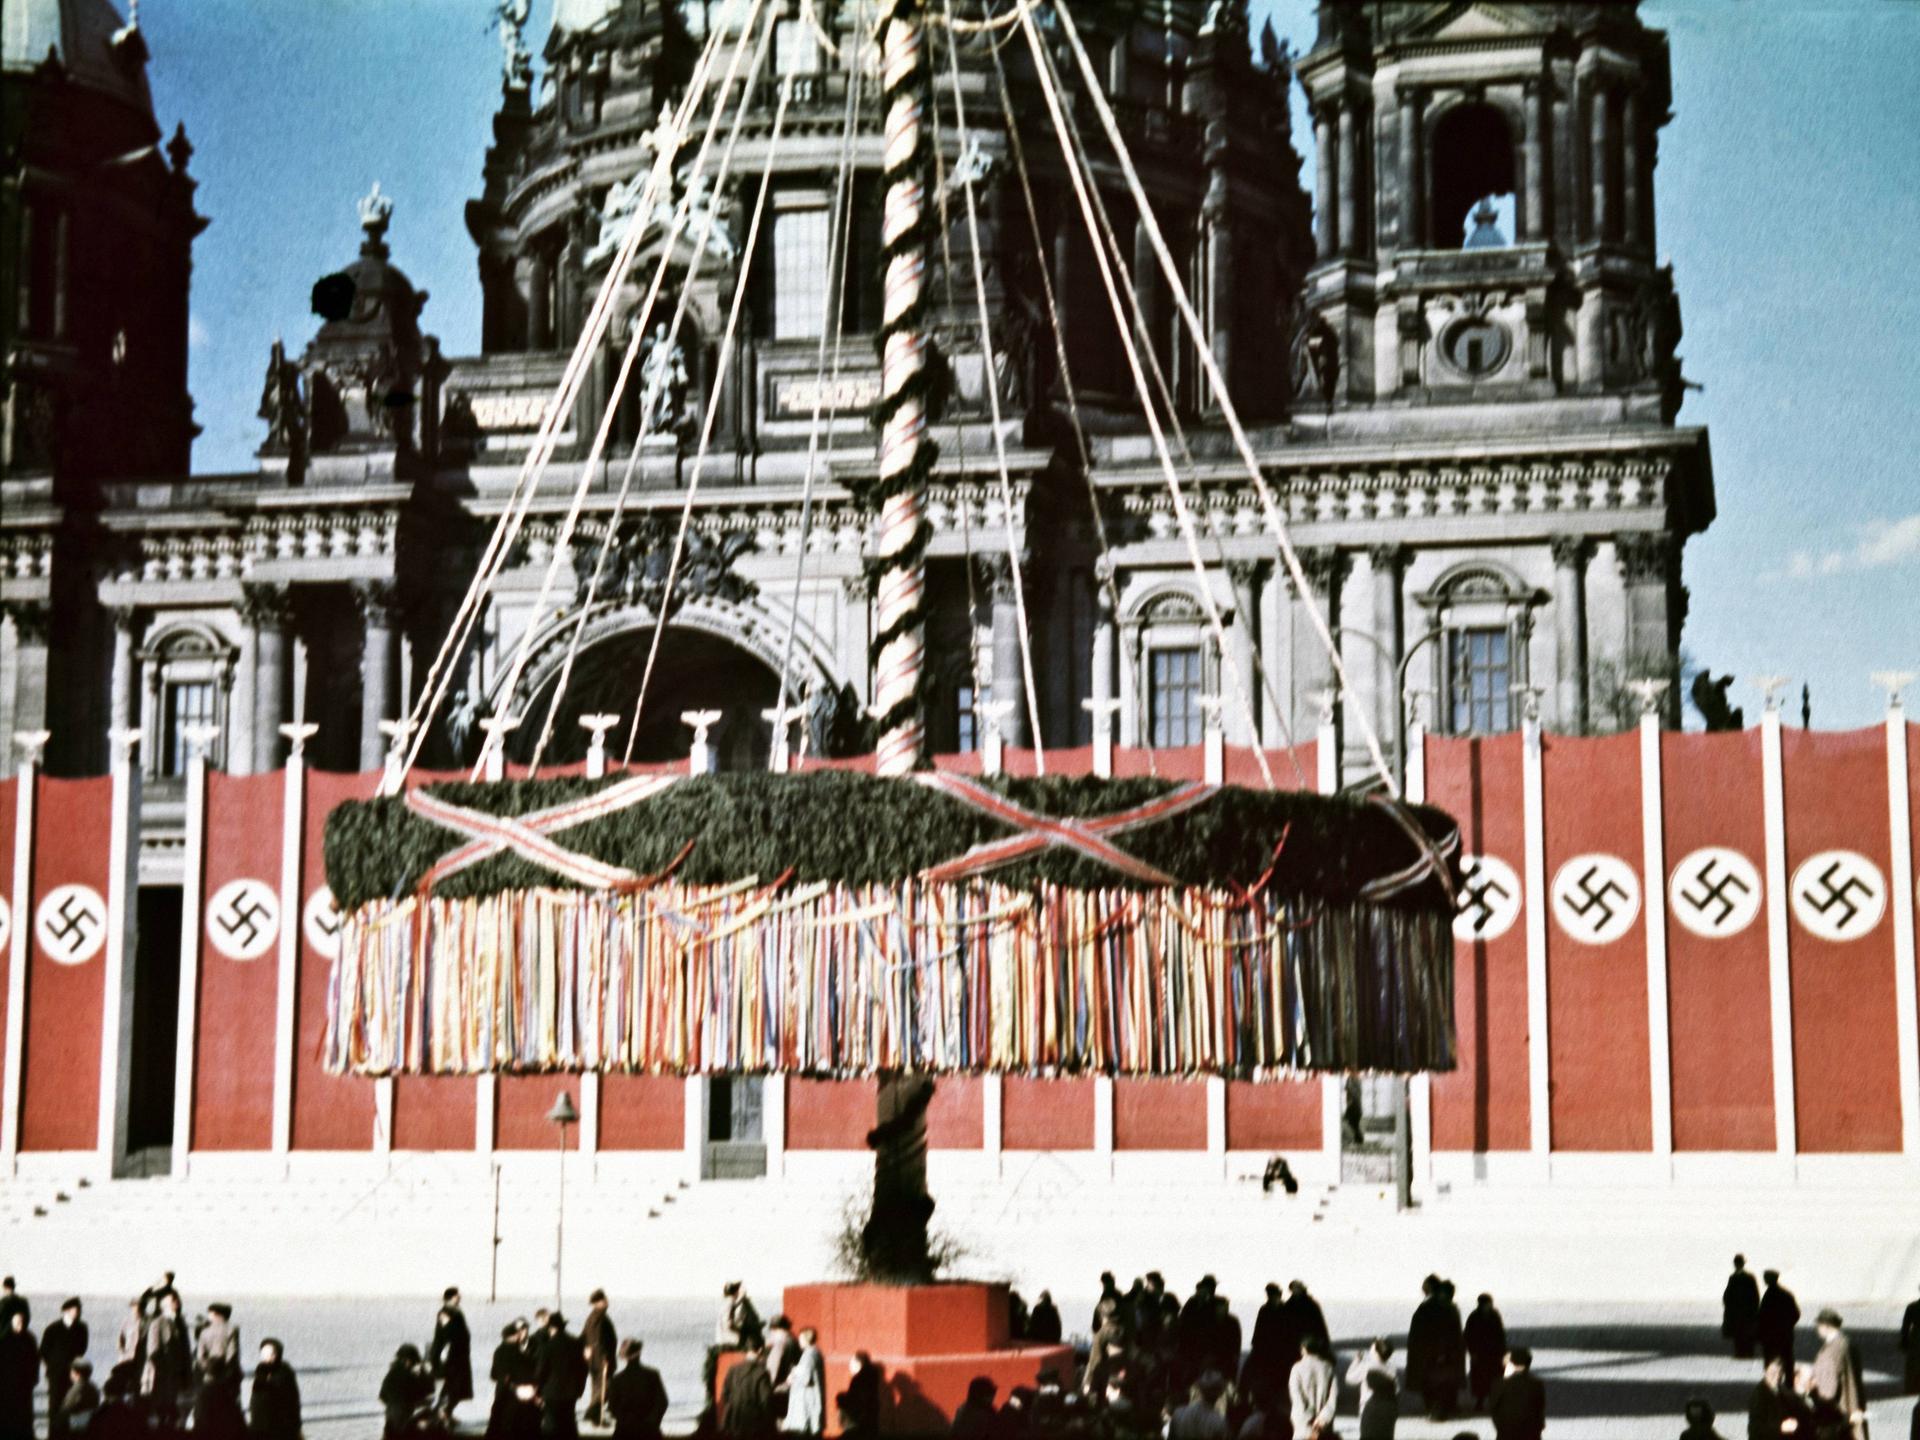 Der Mai-Feiertag wurde von den Nazis ideologisch missbraucht und pompös gefeiert – wie hier am 1. Mai 1937 in Berlin.